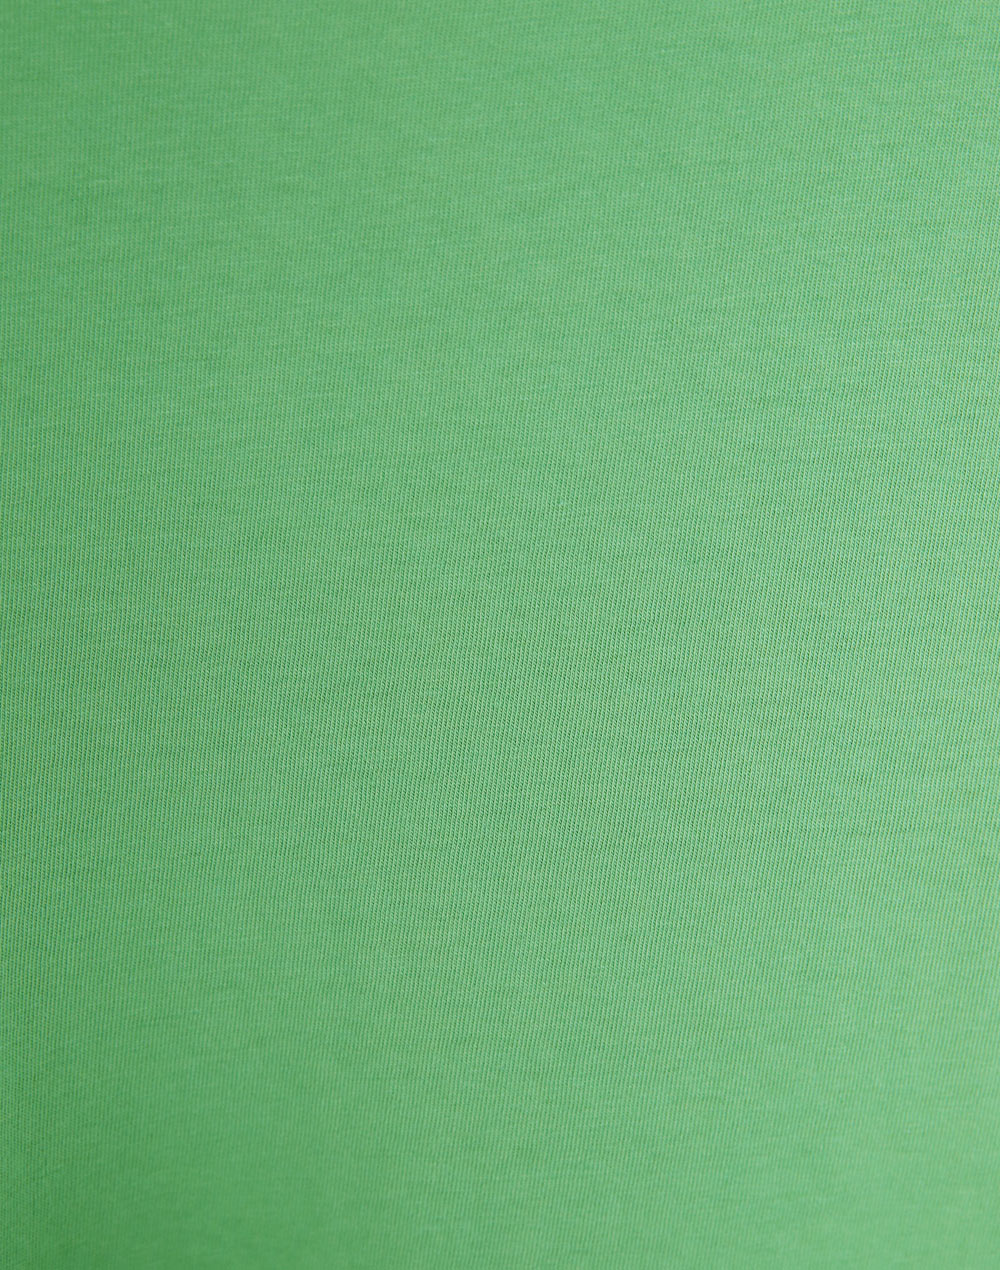 カラバリロゴTシャツ・t281923（トップス/Tシャツ）| ema.217 | 東京ガールズマーケット